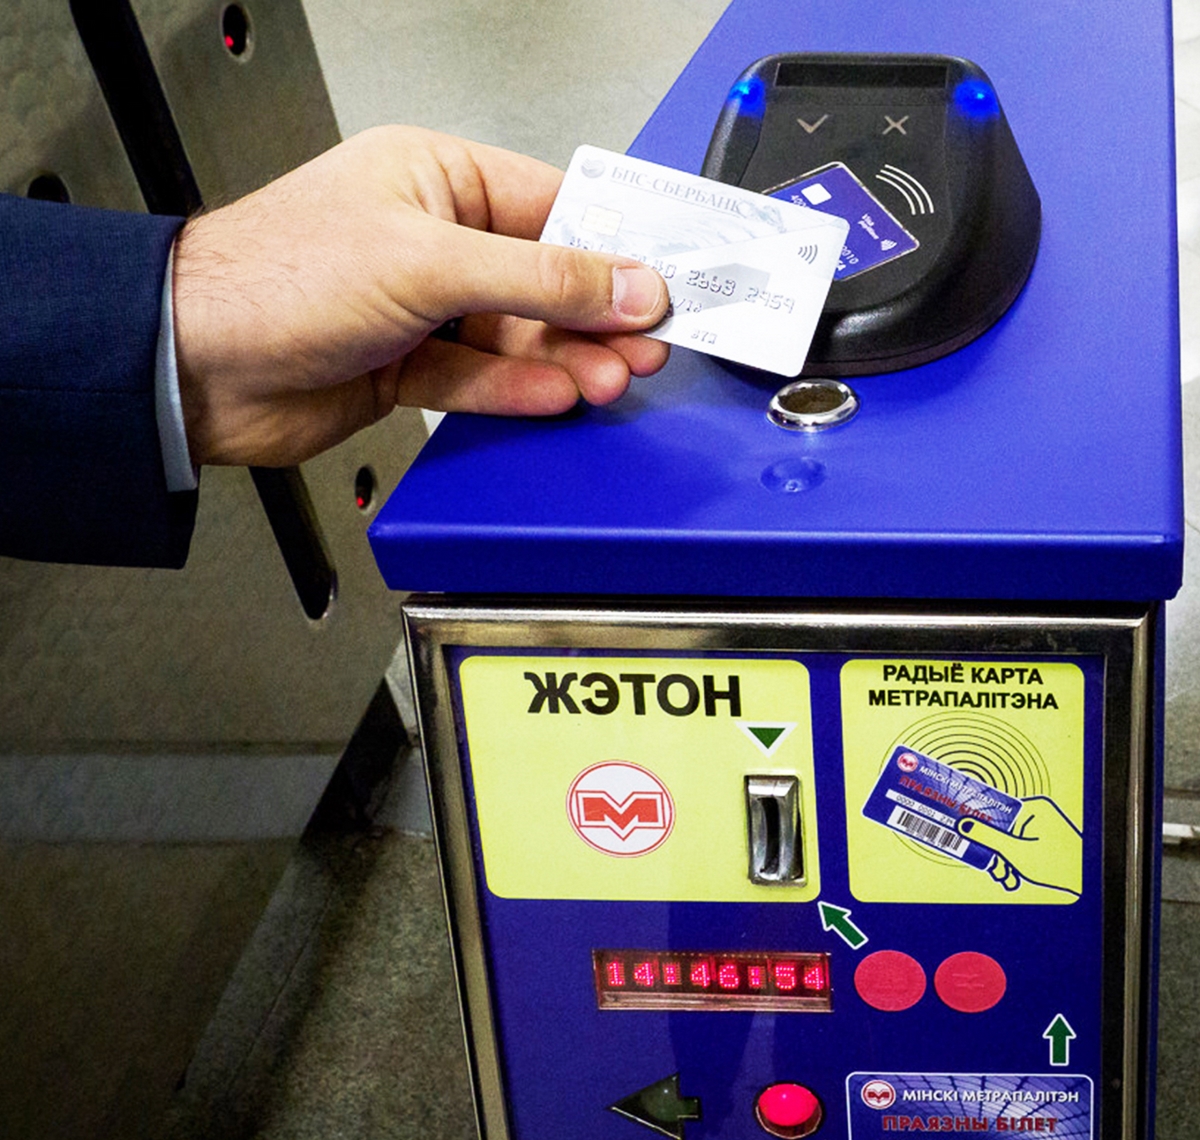 Можно оплатить метро банковской картой в москве. Оплата в метро. Бесконтактная оплата. Оплата проезда в метро. Турникет при оплате банковской картой.